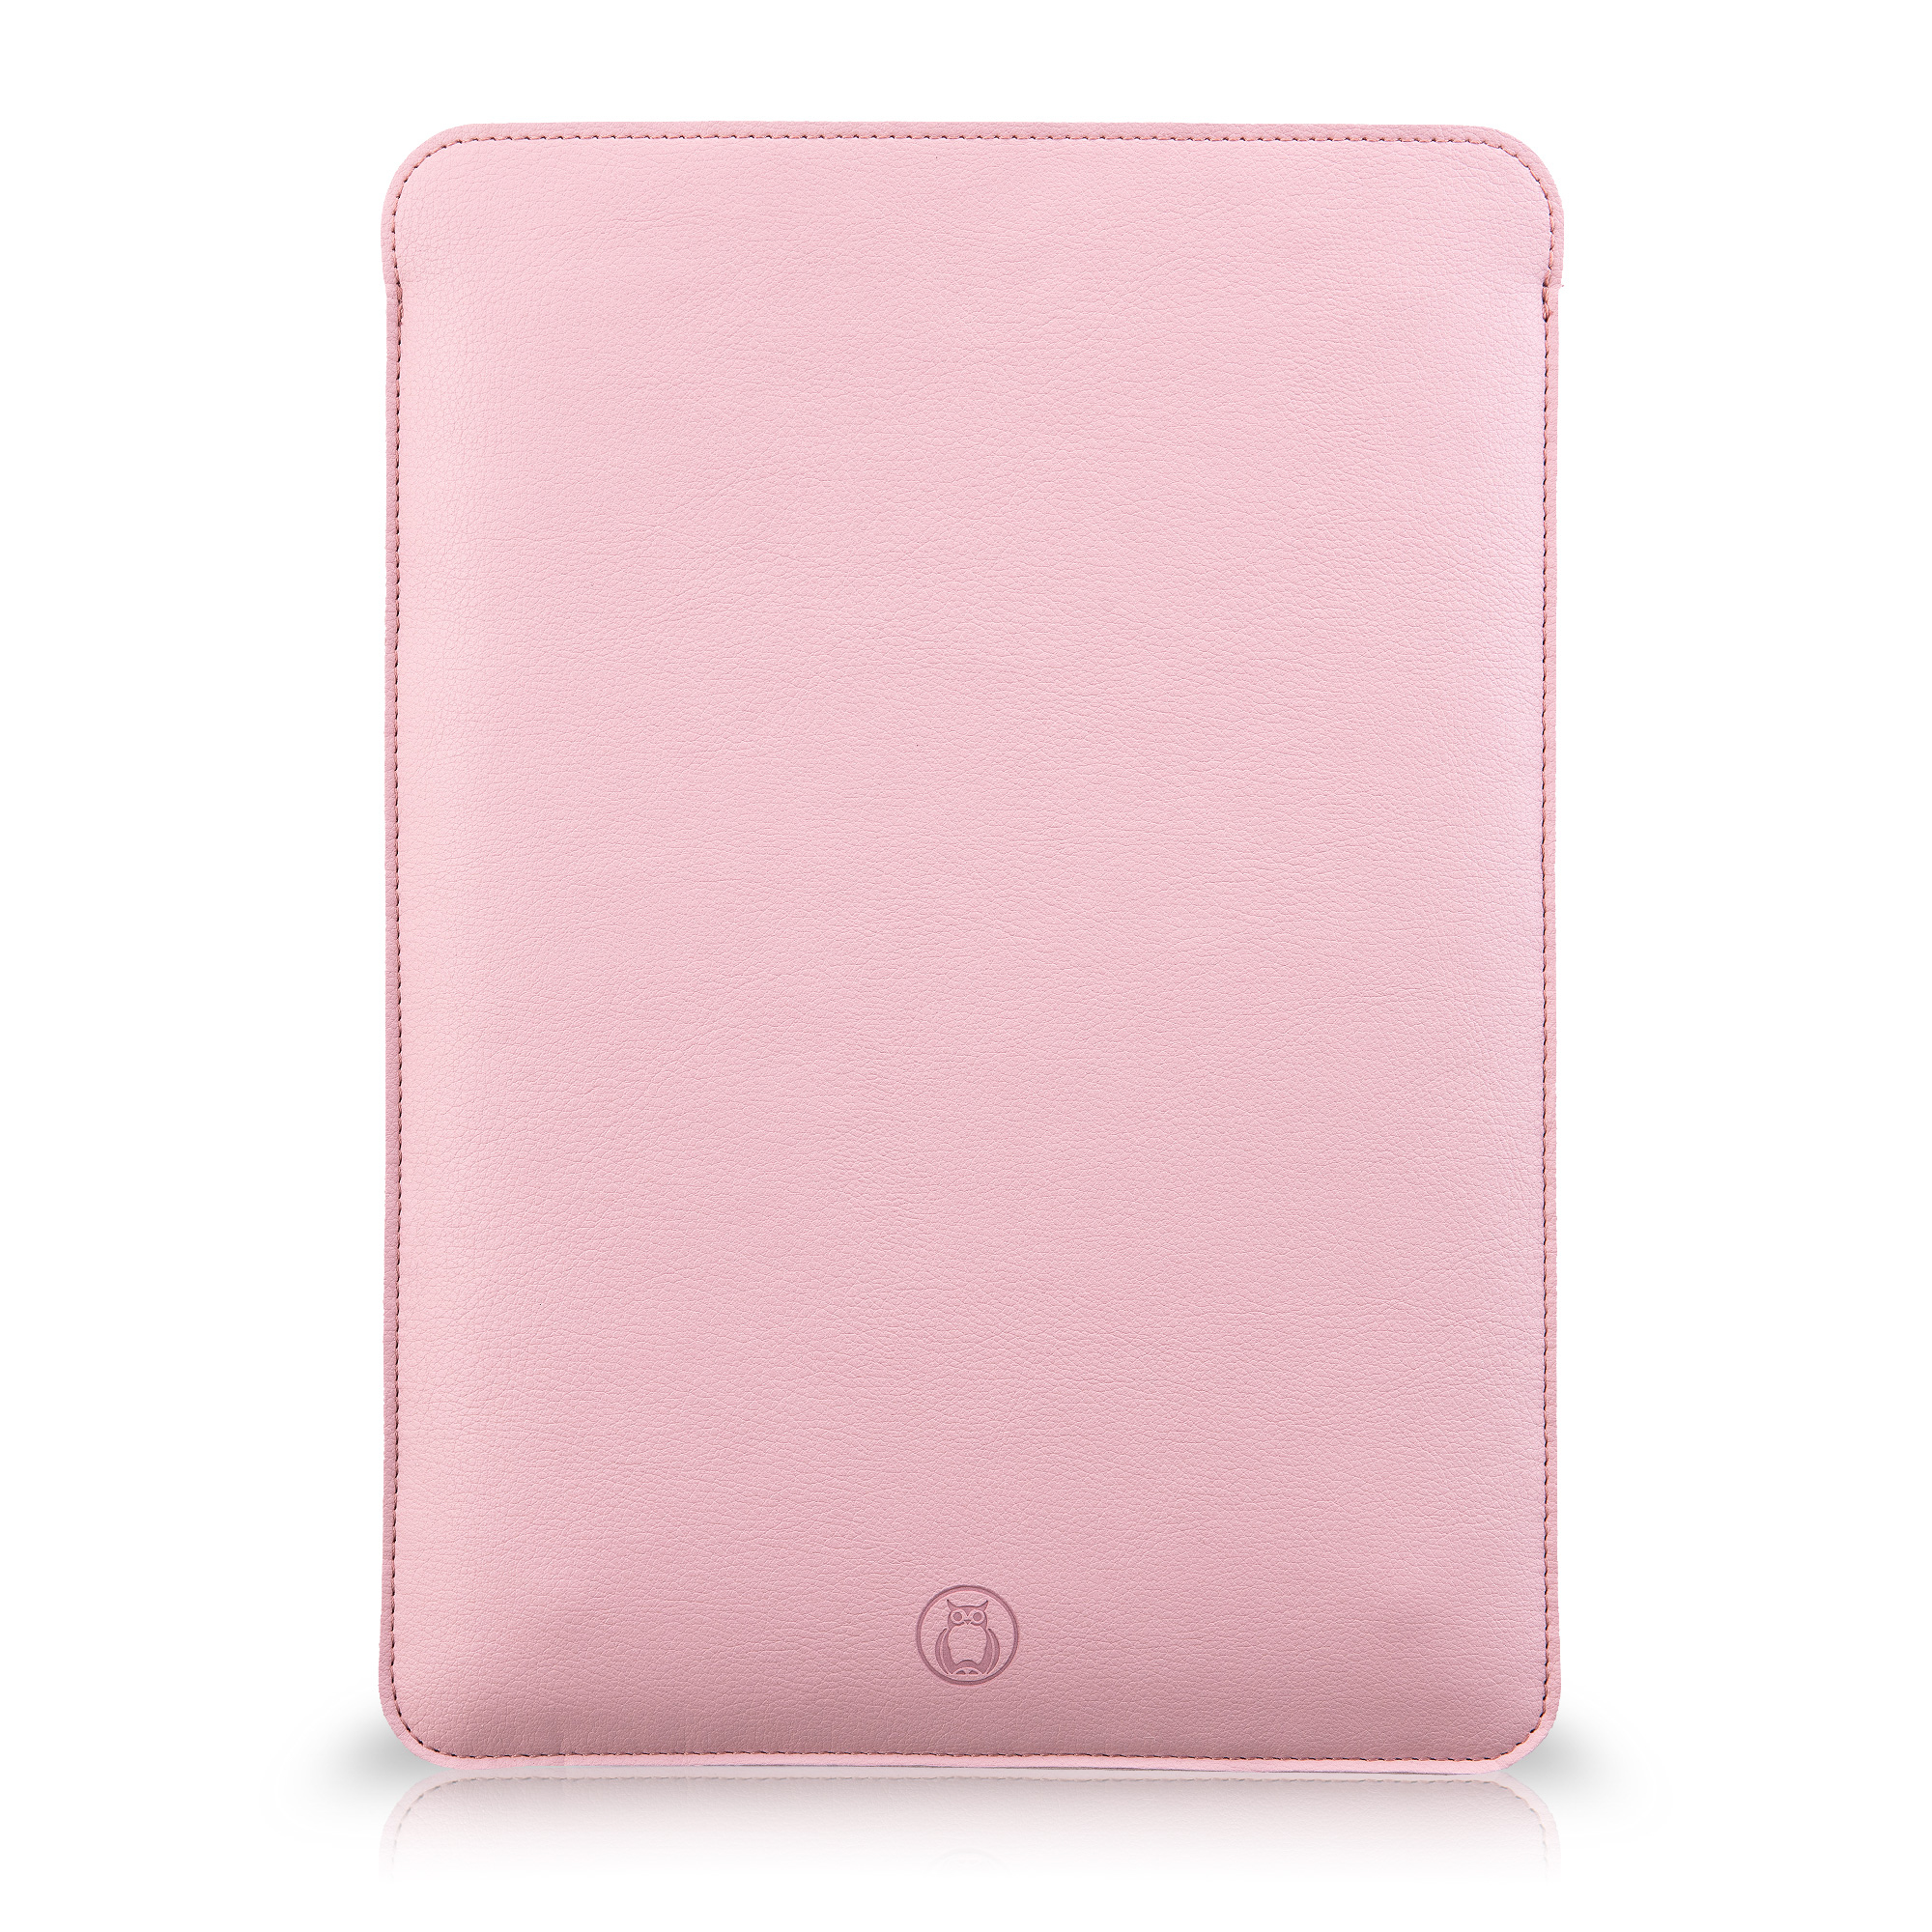 Husa laptop MacBook 13 inch UNIKA piele PU cu lana din fibre naturale roz sanito.ro imagine model 2022